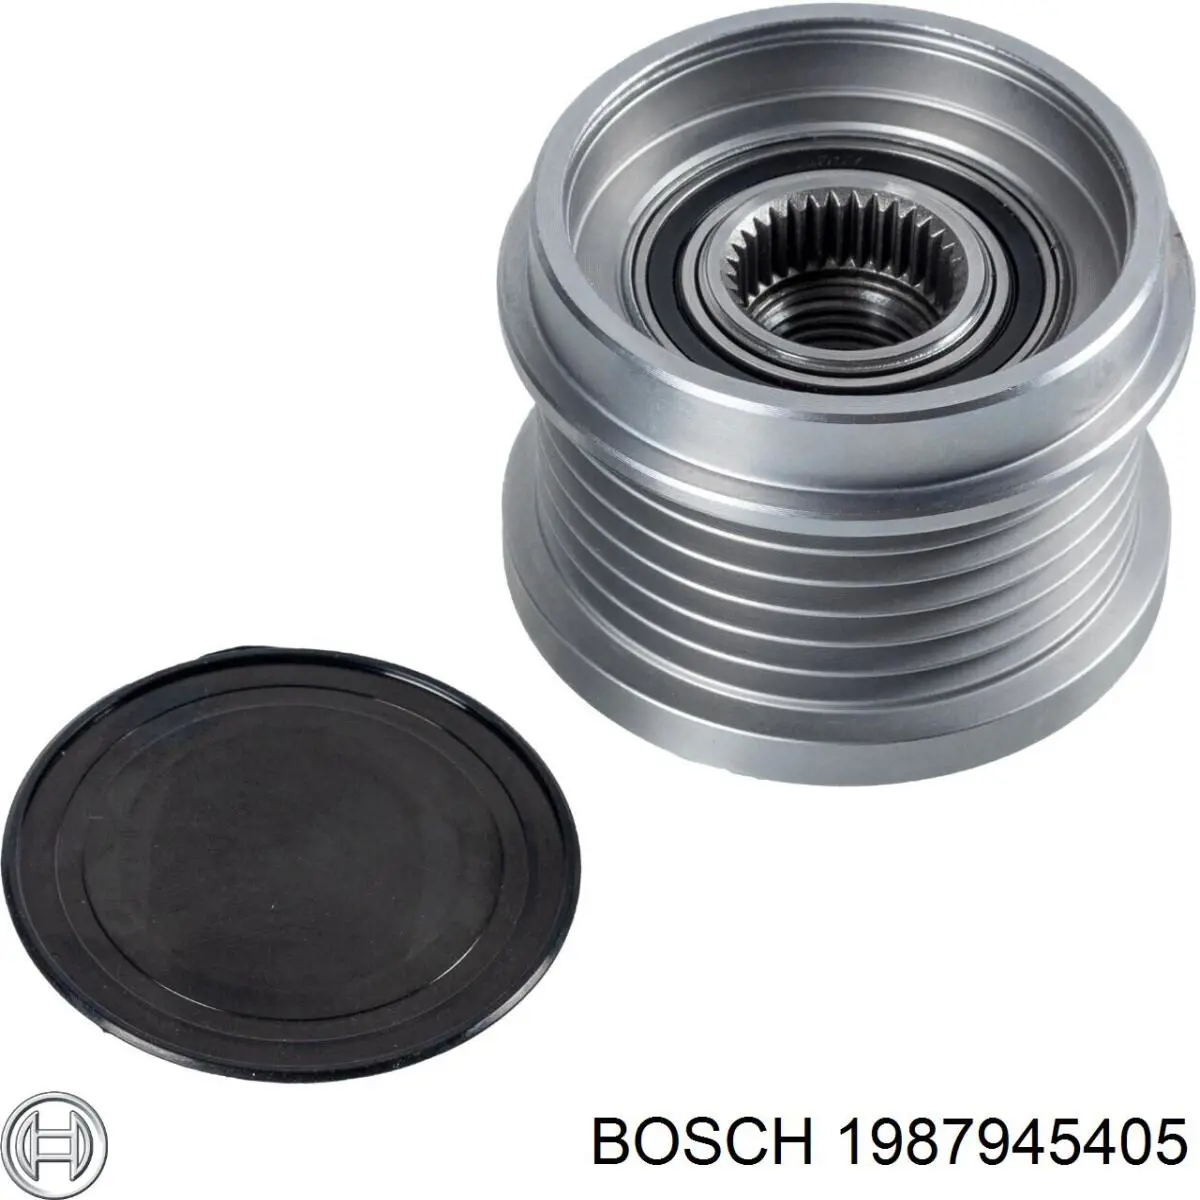 1987945405 Bosch polea del alternador